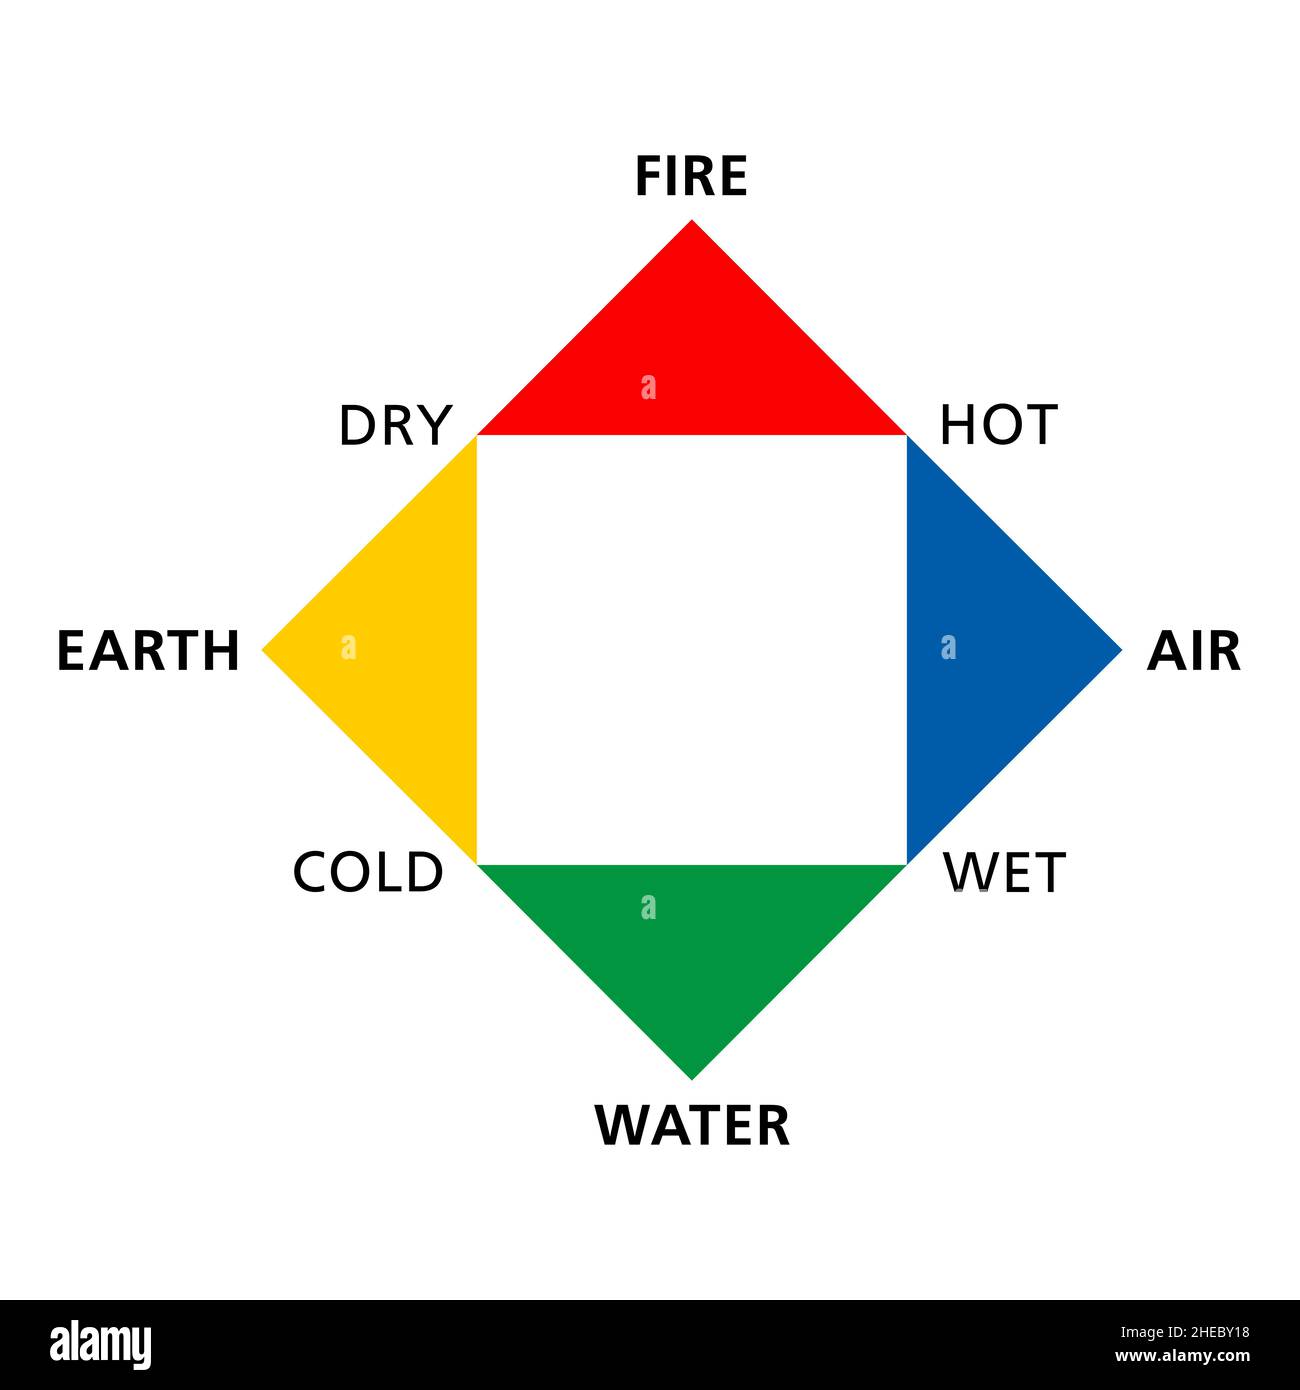 Colorati, classici quattro elementi fuoco, terra, acqua e aria, con le loro qualità caldo, secco, freddo e bagnato. Foto Stock